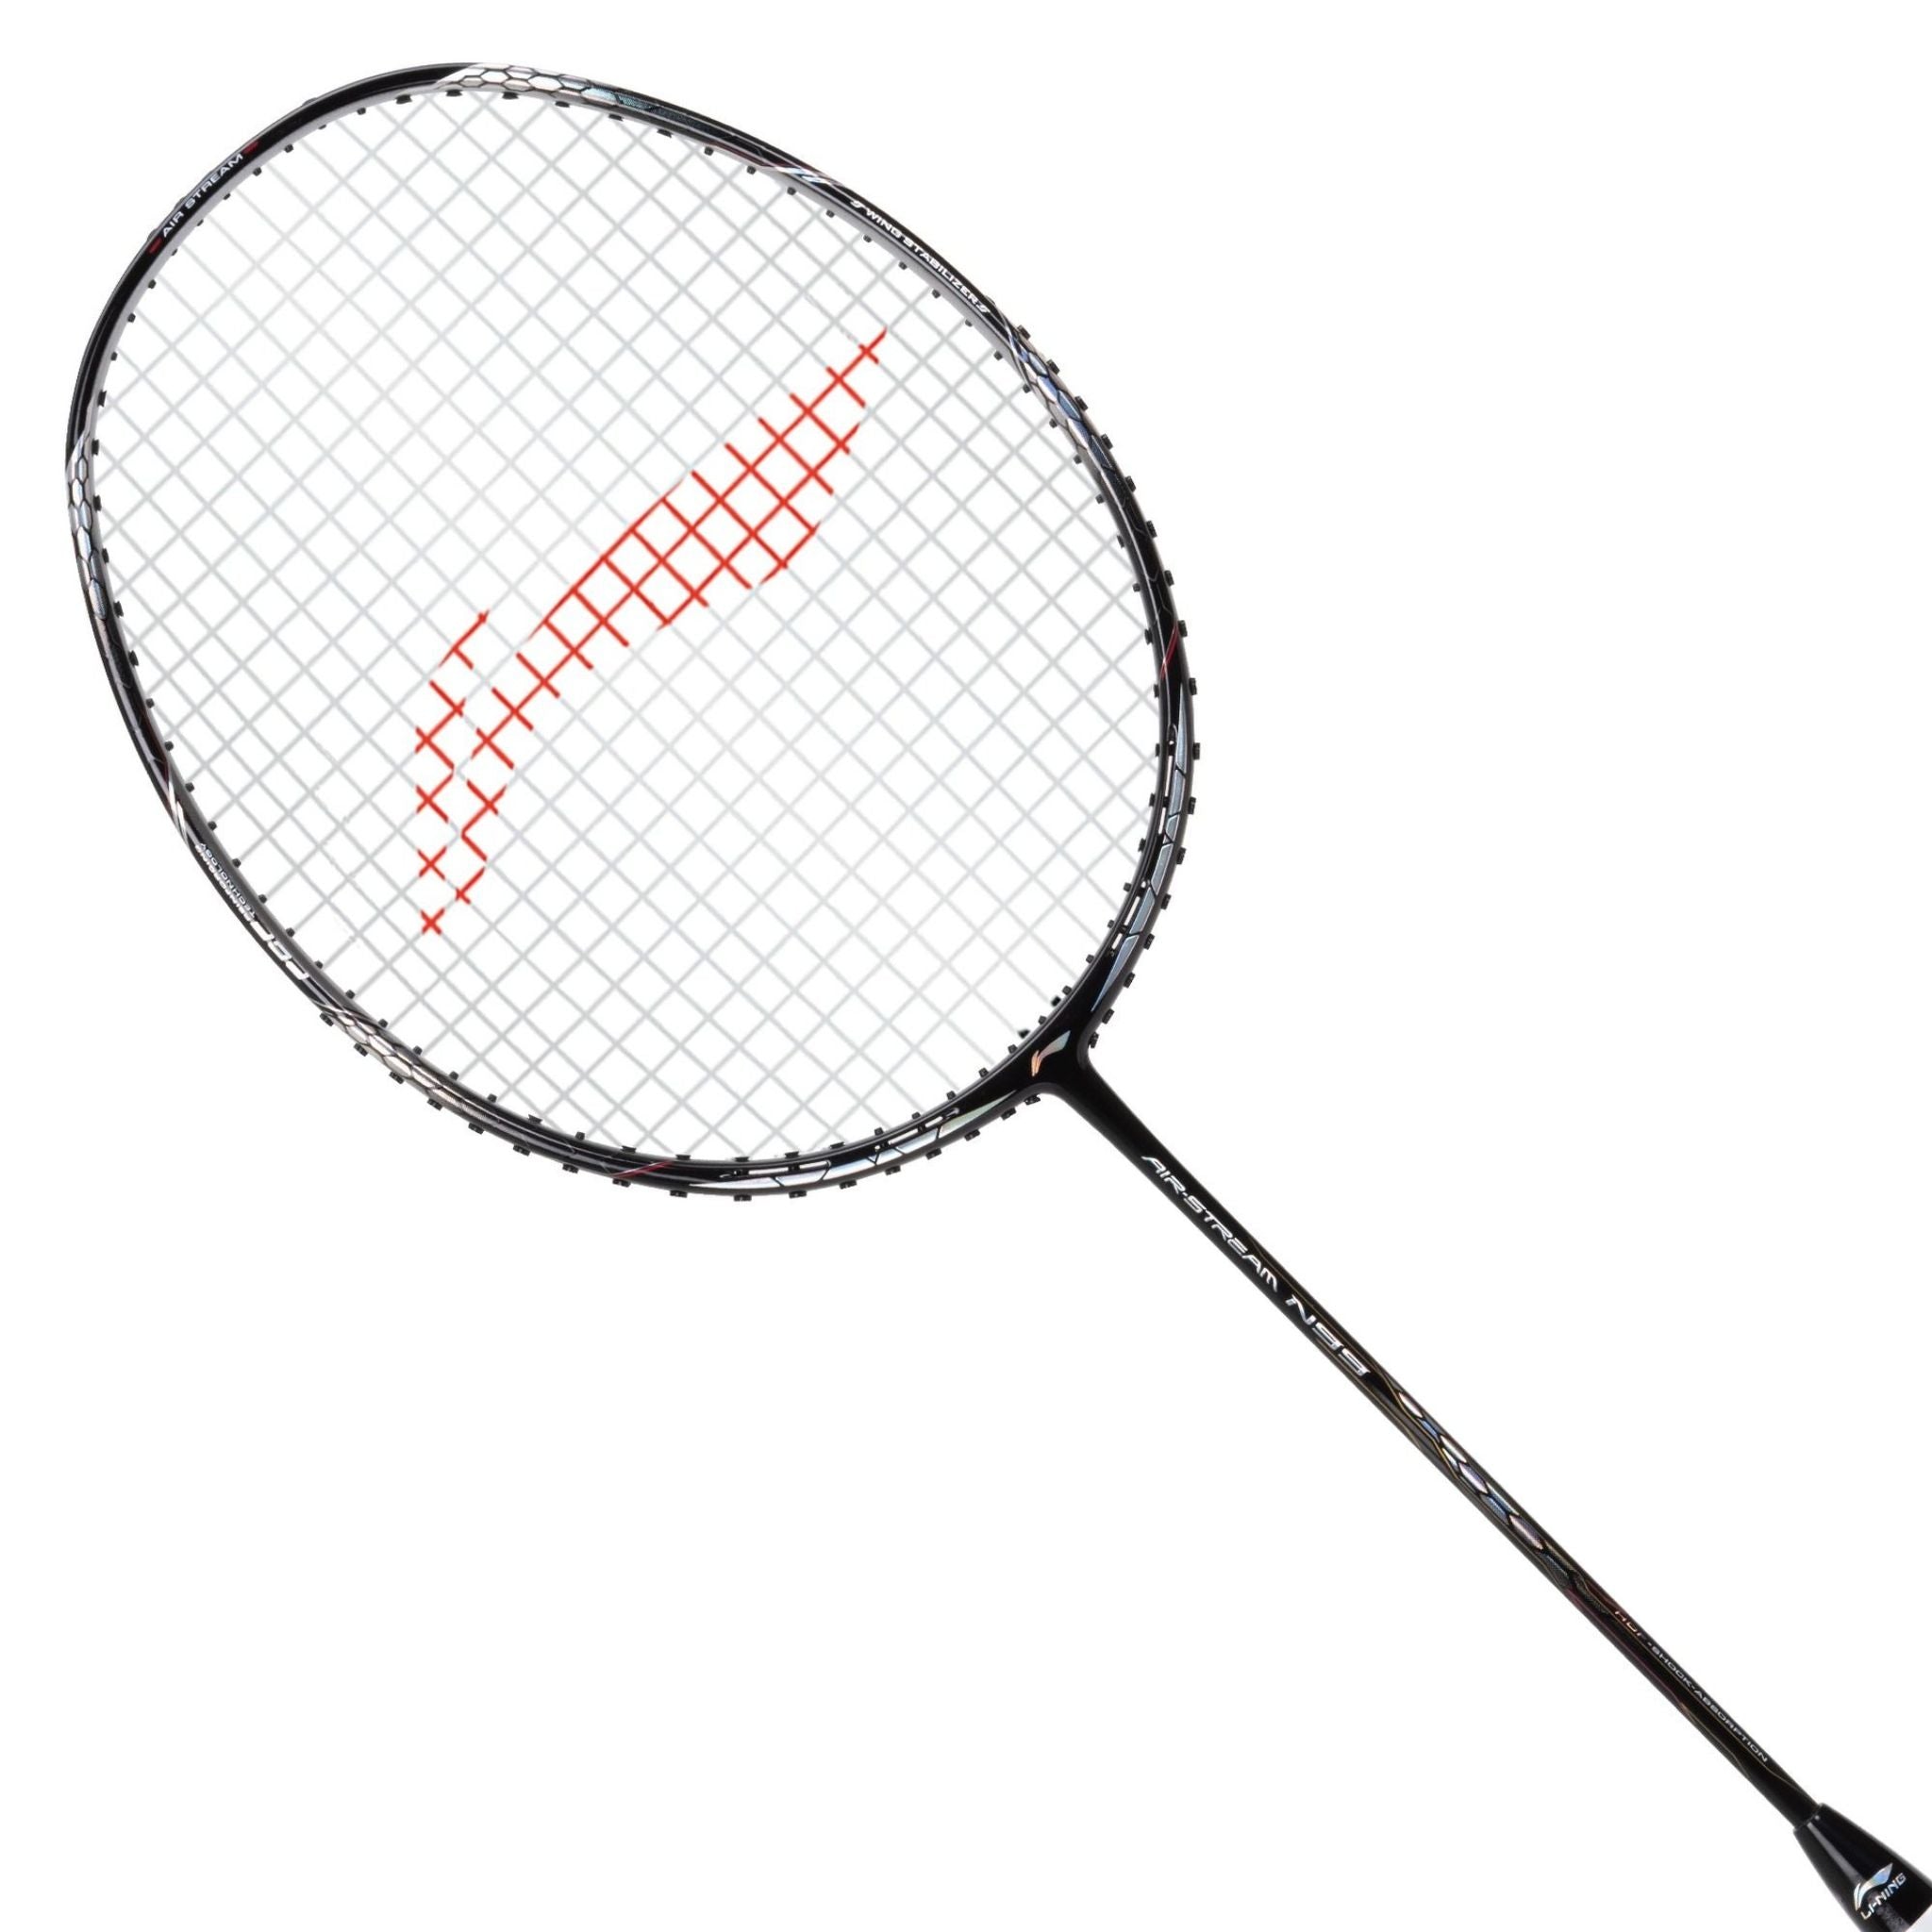 LI-NING Air-Stream N 99 Badminton Racket